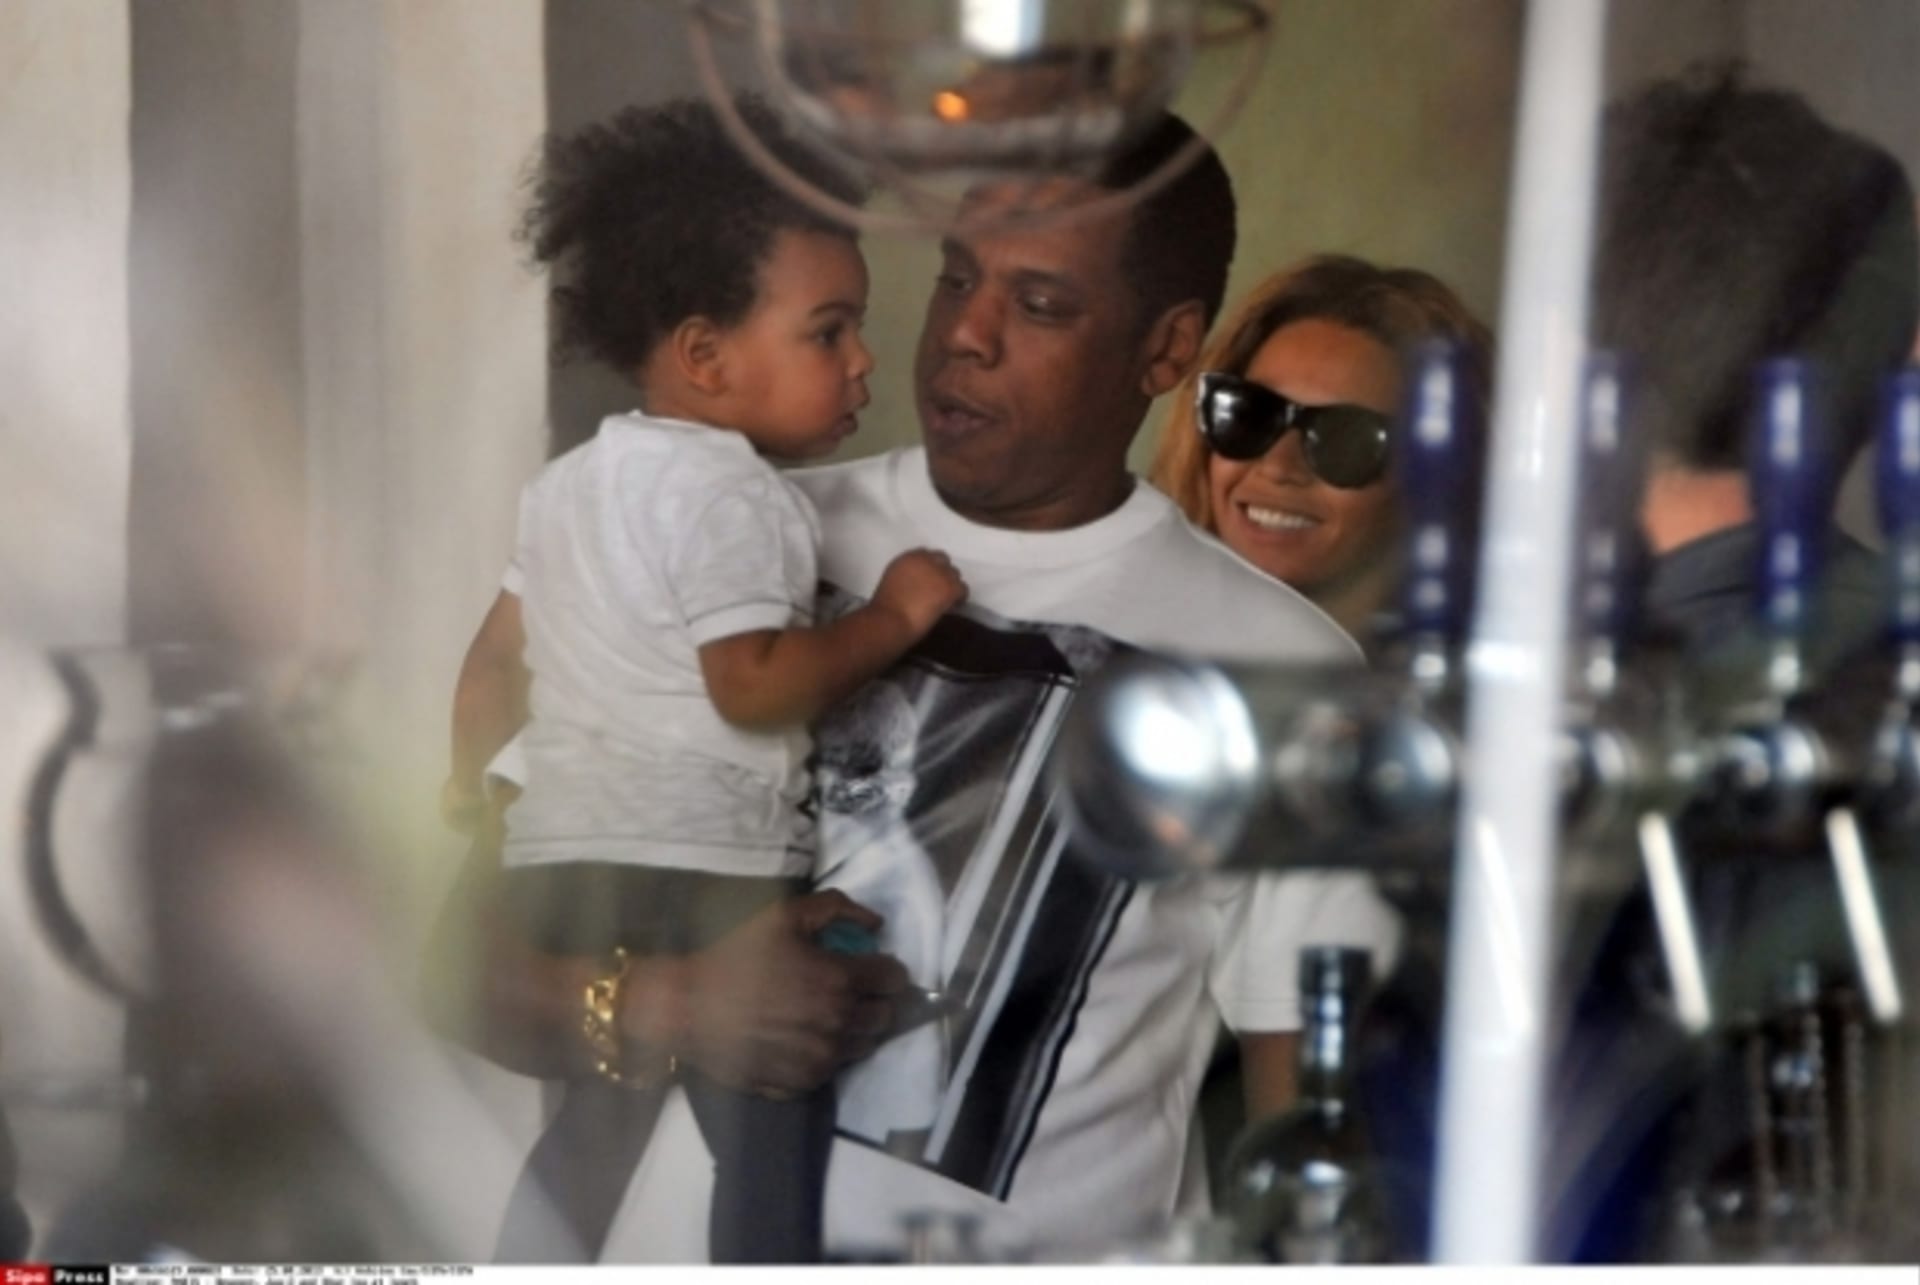 Beyoncé s rodinkou na obědě v Paříži